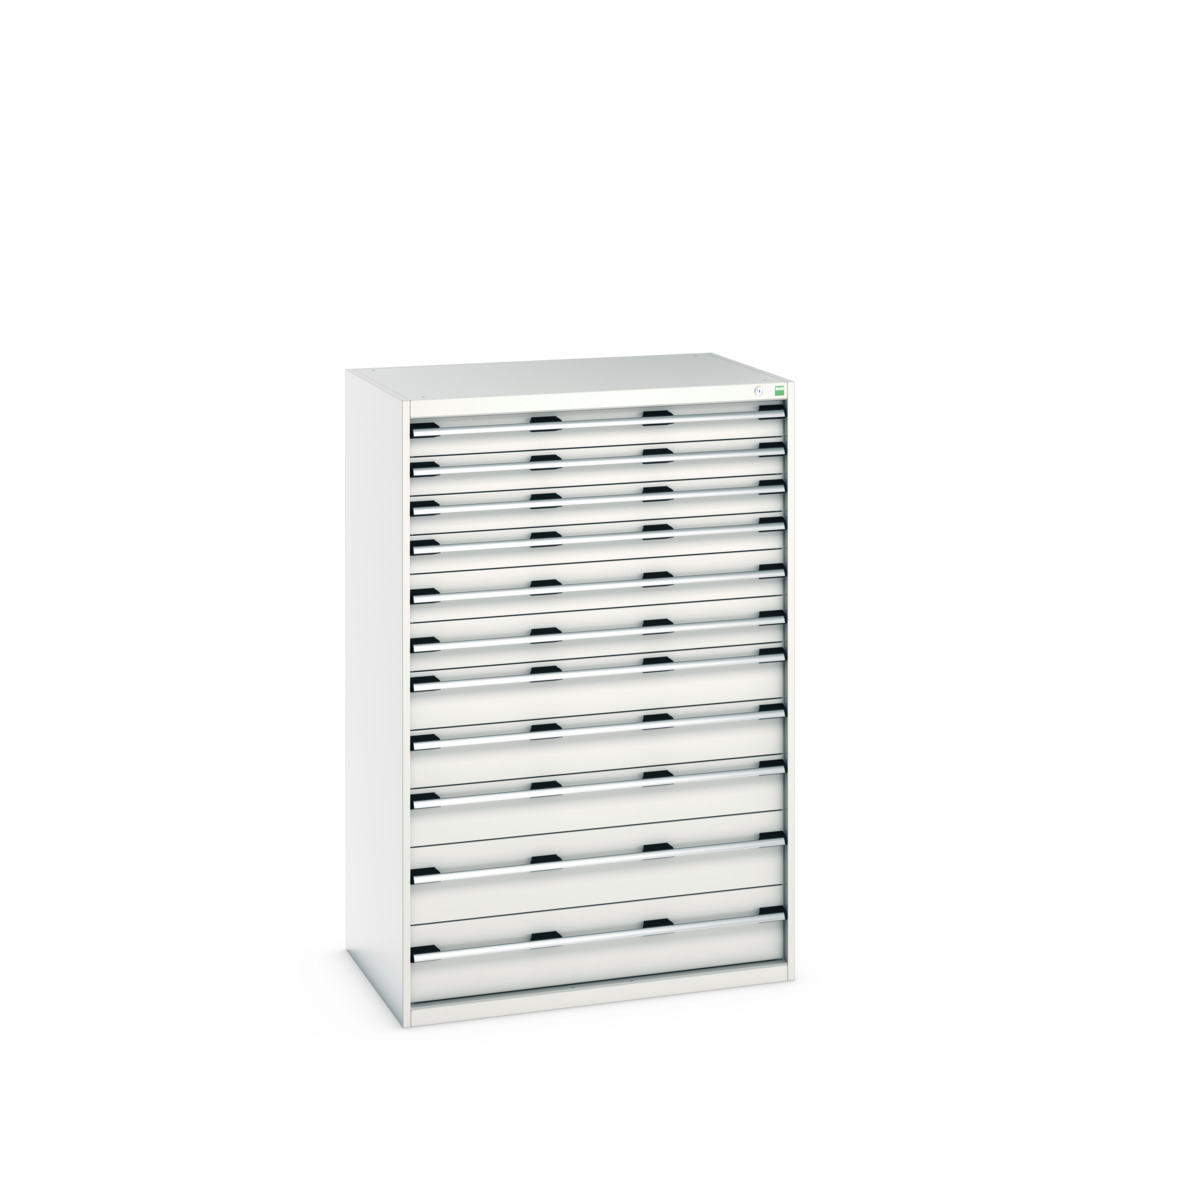 40029038.16V - cubio drawer cabinet